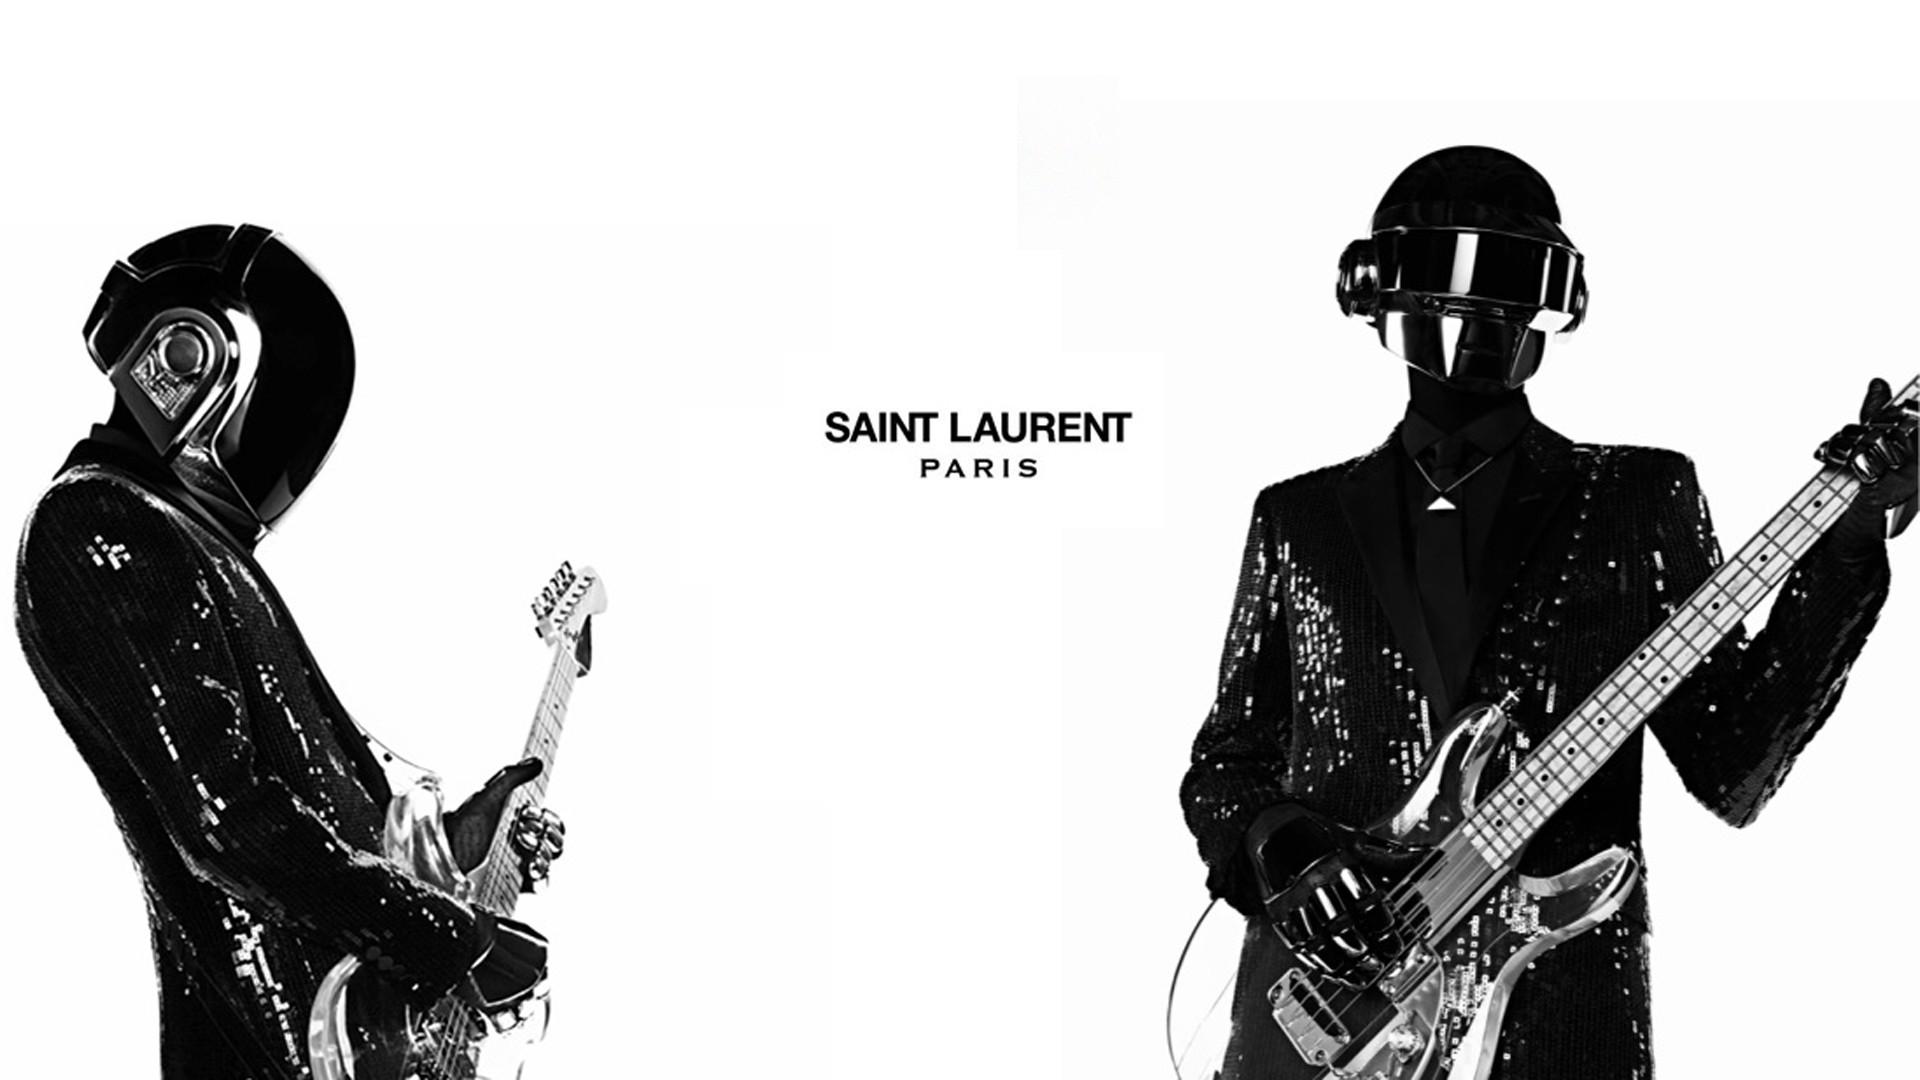 White Daft Punk Guitars Yves Saint Laurent Wallpaper 1264